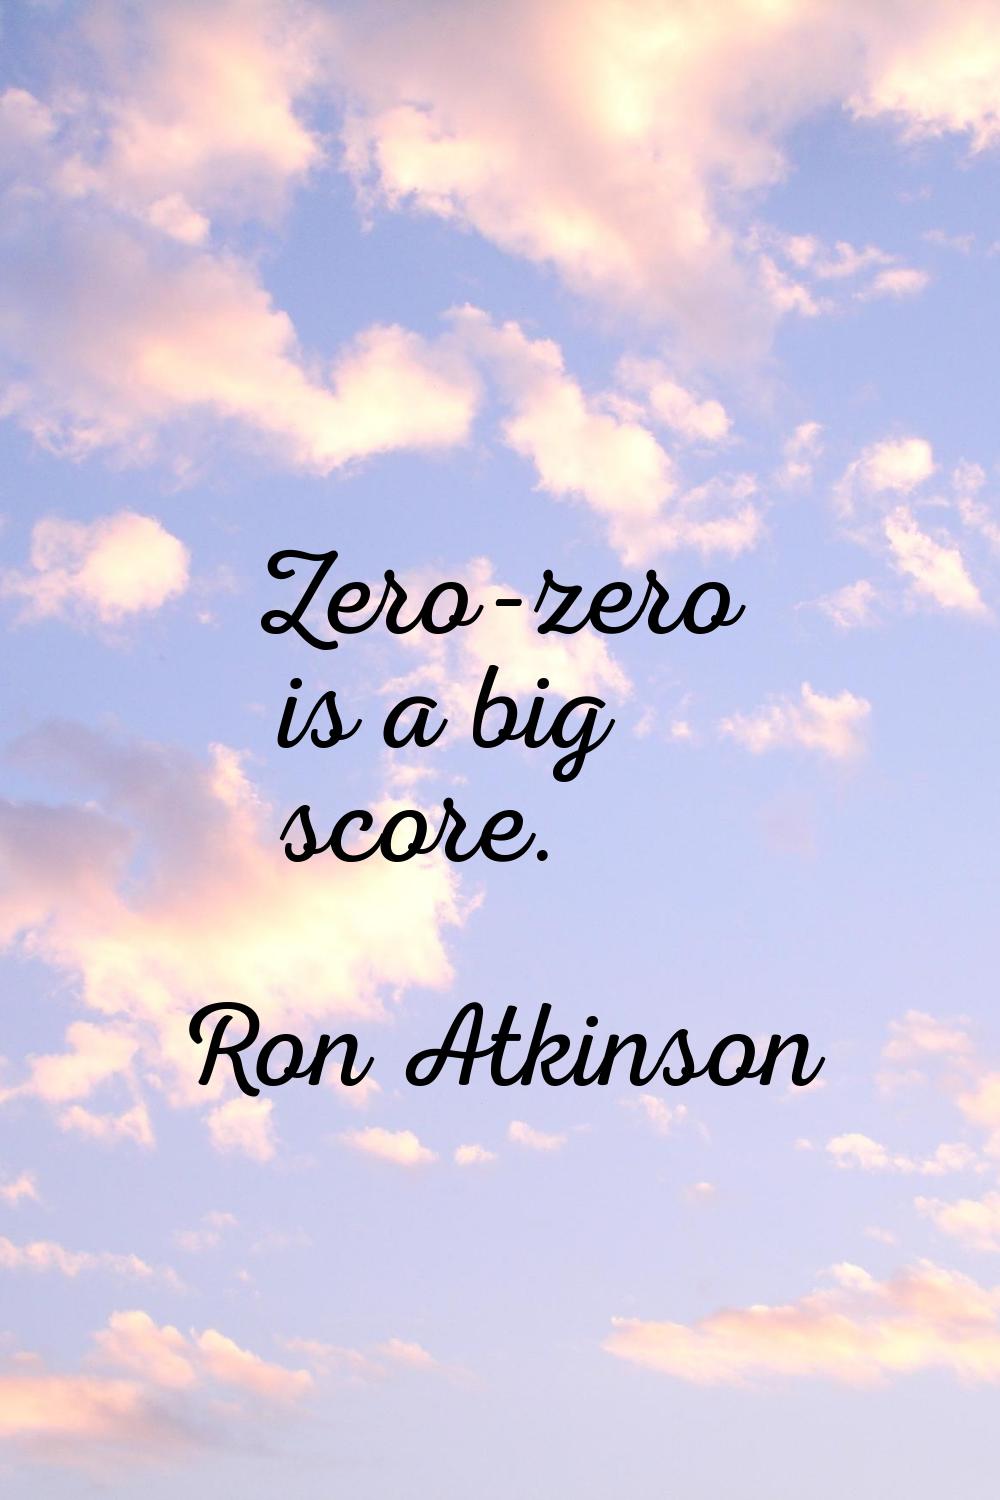 Zero-zero is a big score.